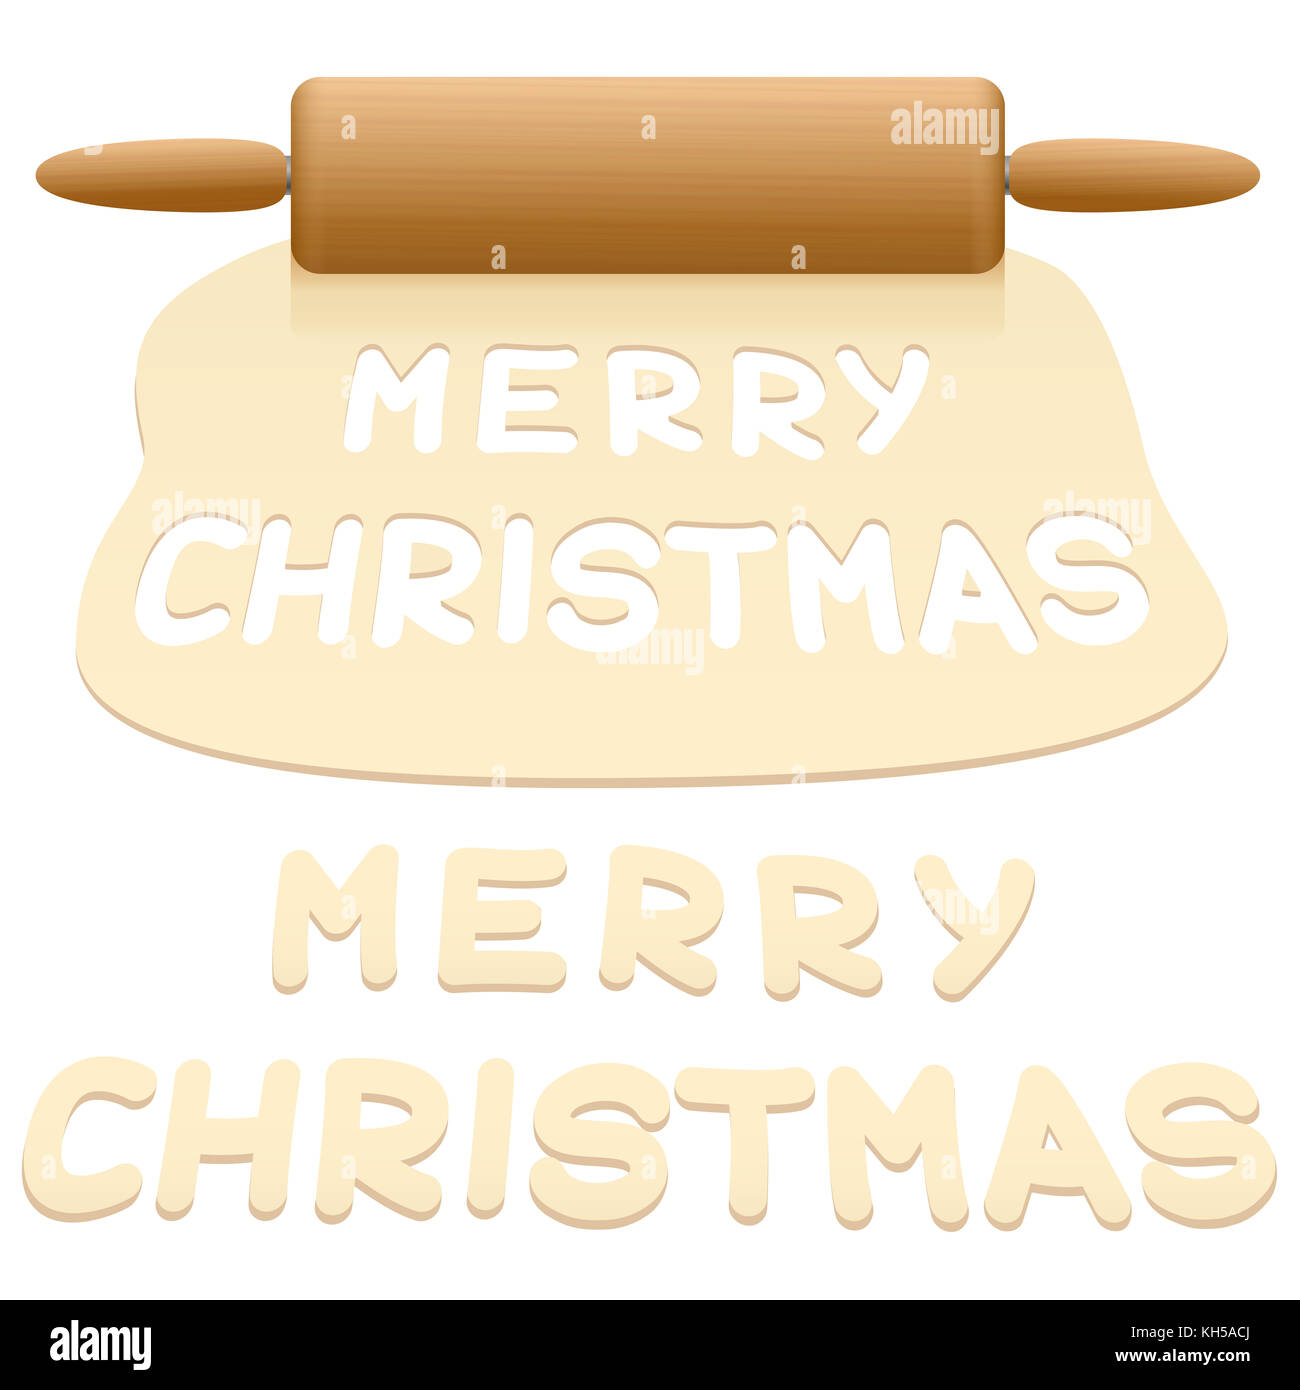 Tagliare i cookie dalla pasta dicendo Merry Christmas - illustrazione su sfondo bianco. Foto Stock